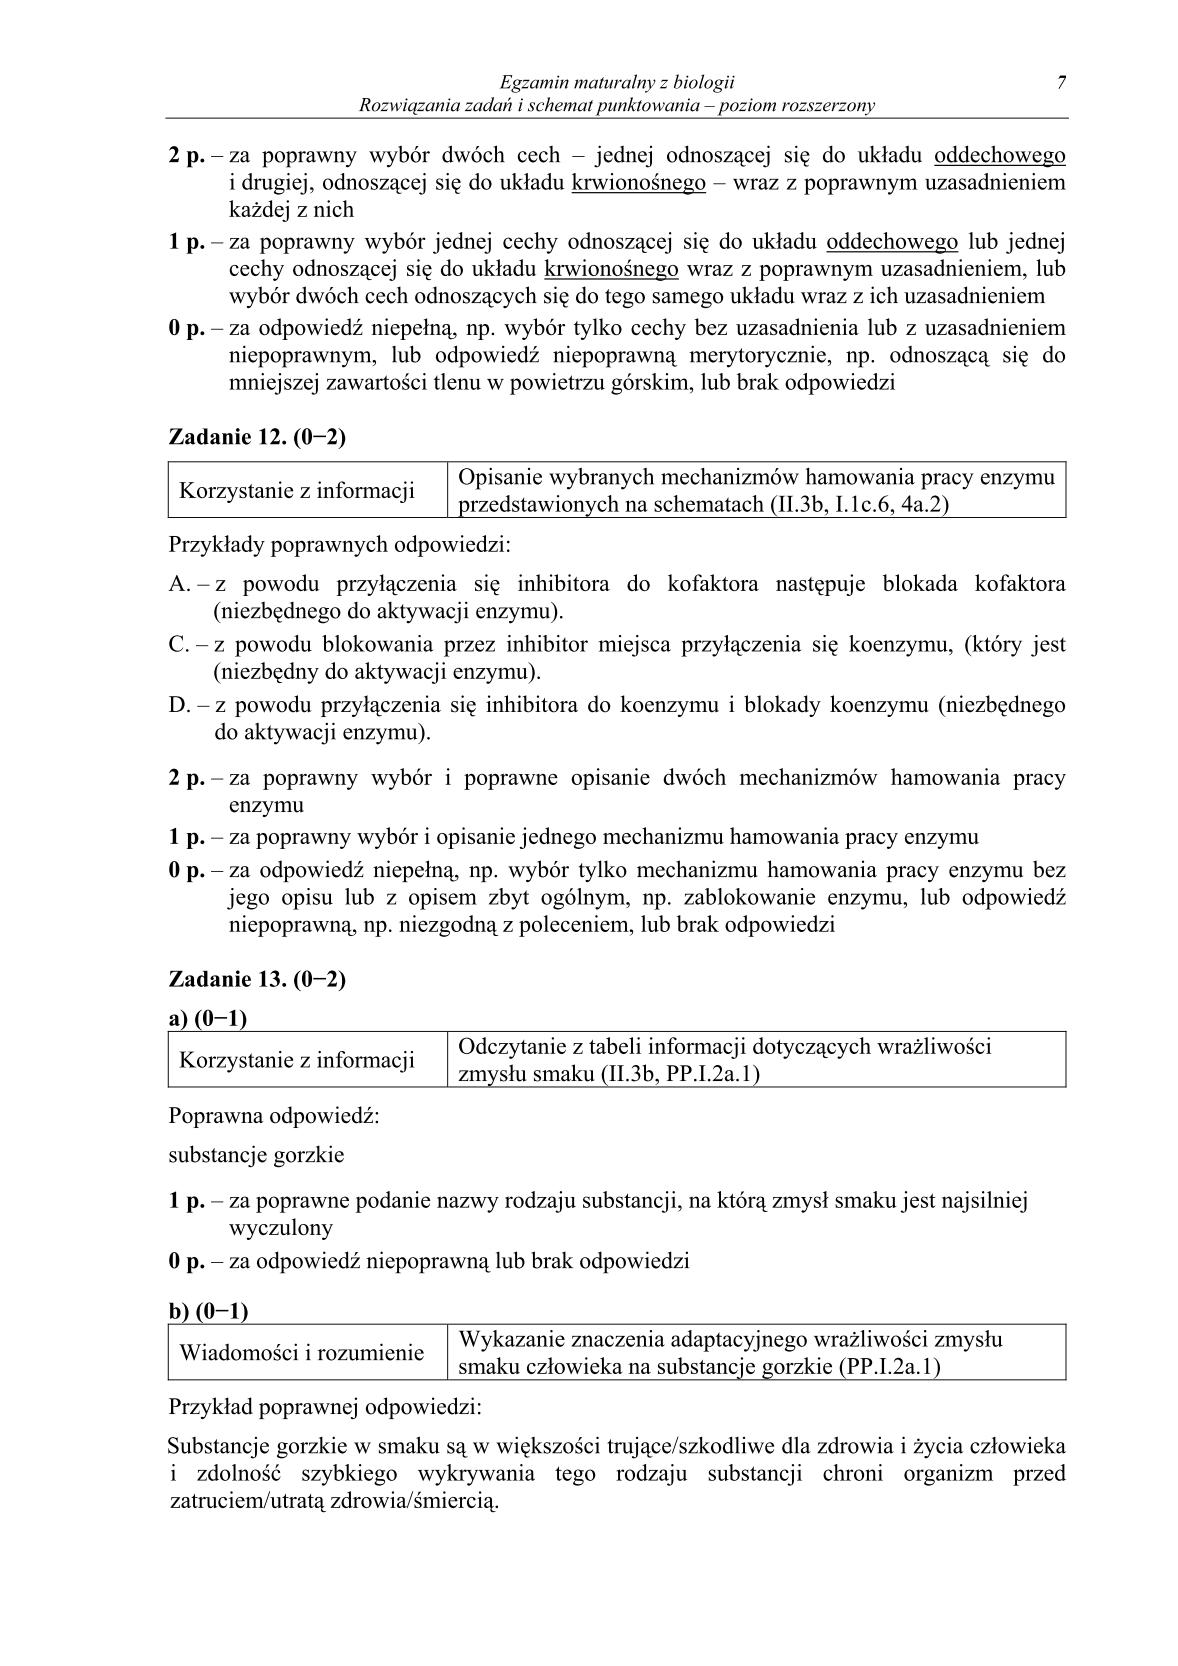 odpowiedzi-biologia-poziom-rozszerzony-matura-2014-str.7